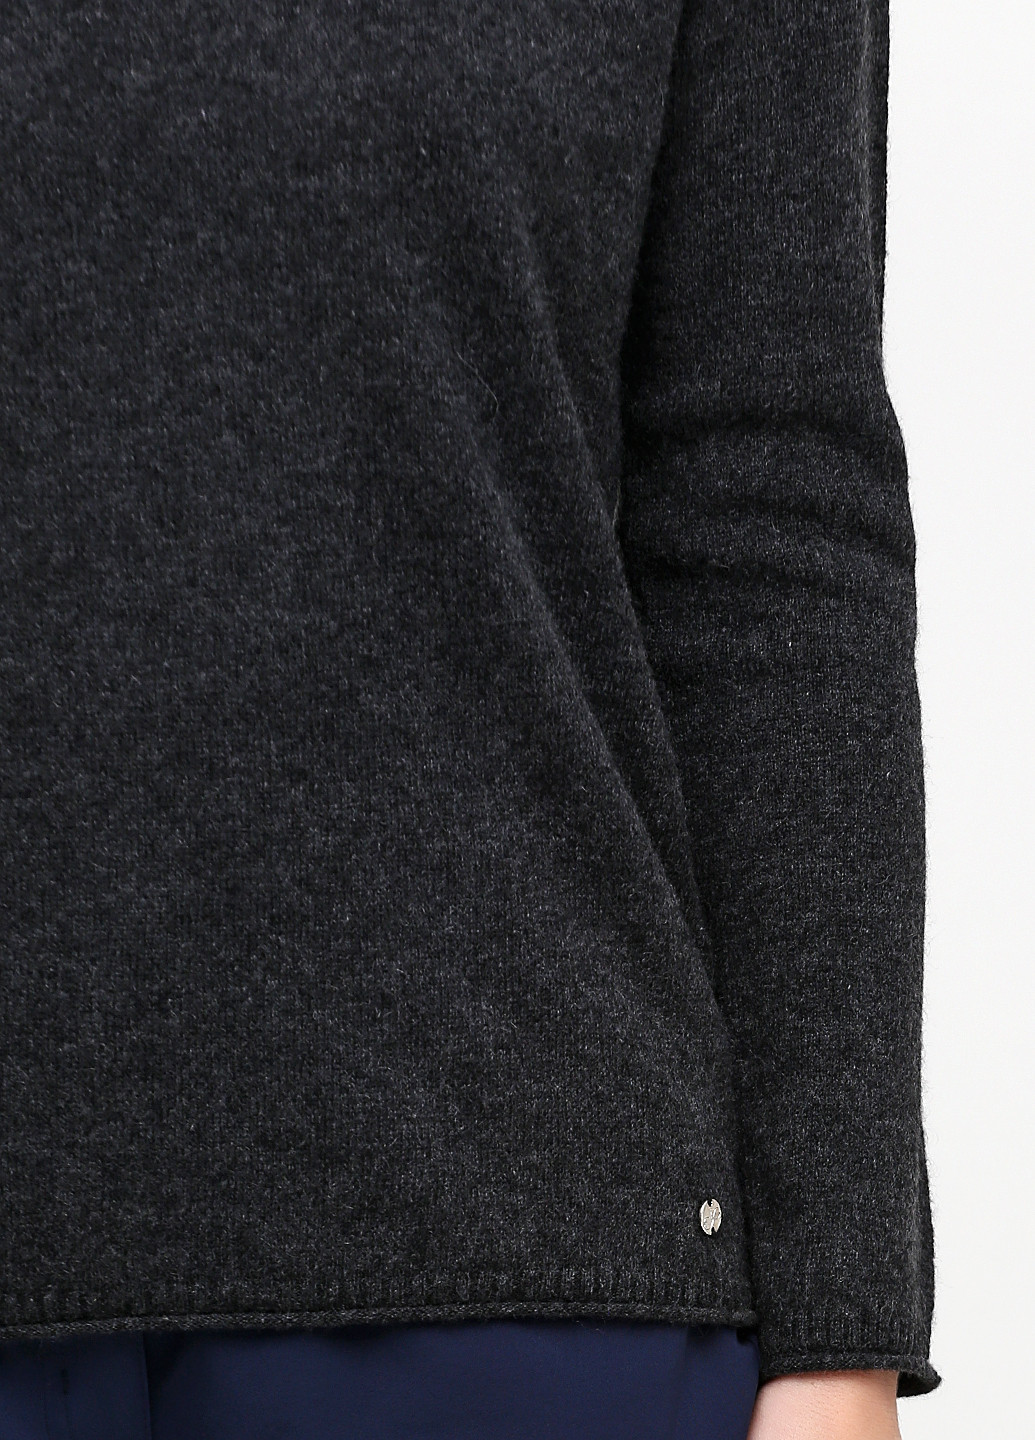 Темно-серый демисезонный пуловер пуловер Esmara